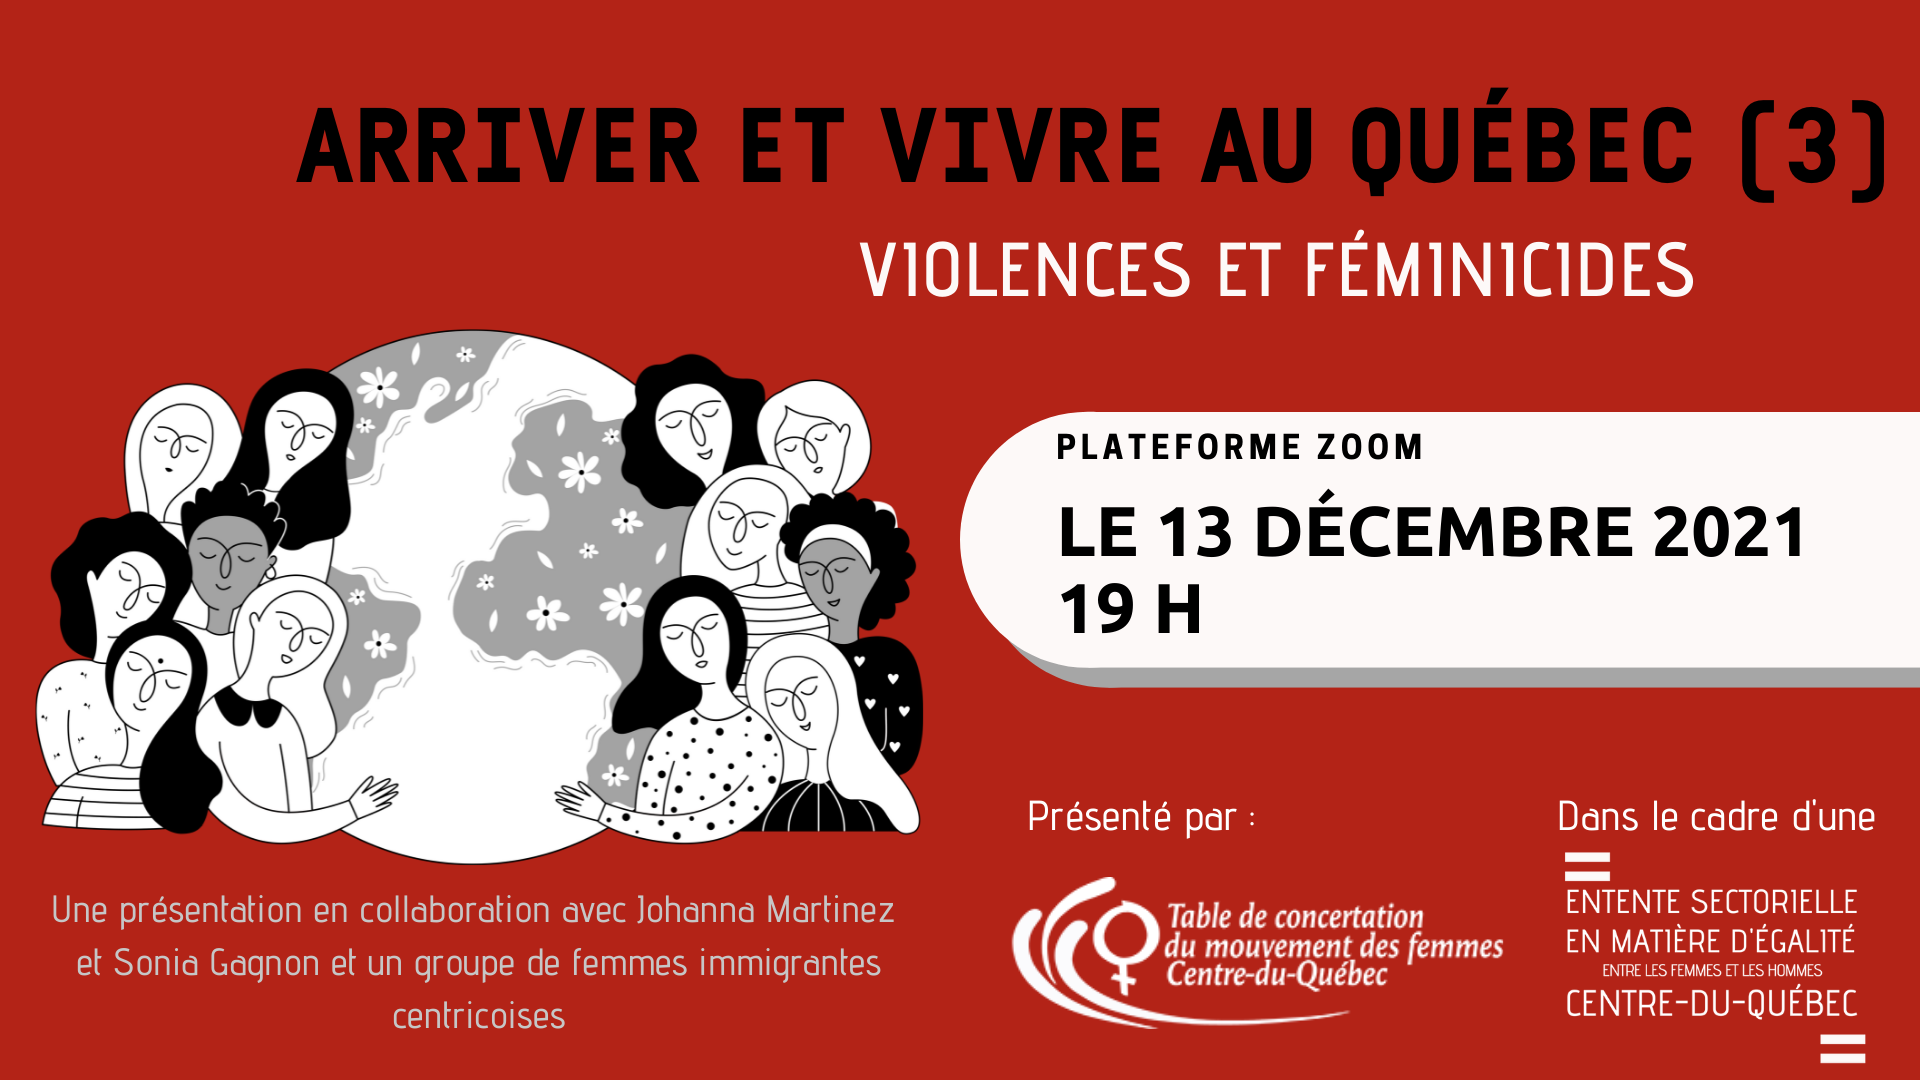 Arriver et vivre au Québec (3) - Violences et féminicides